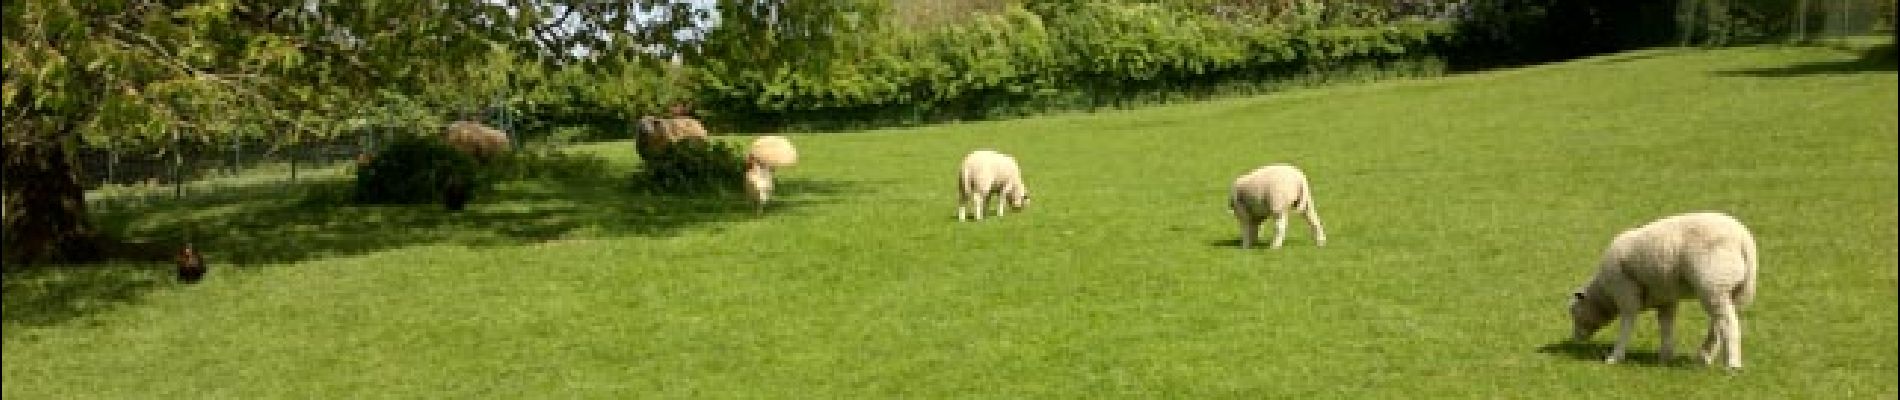 POI Genappe - Prairie et moutons - Photo